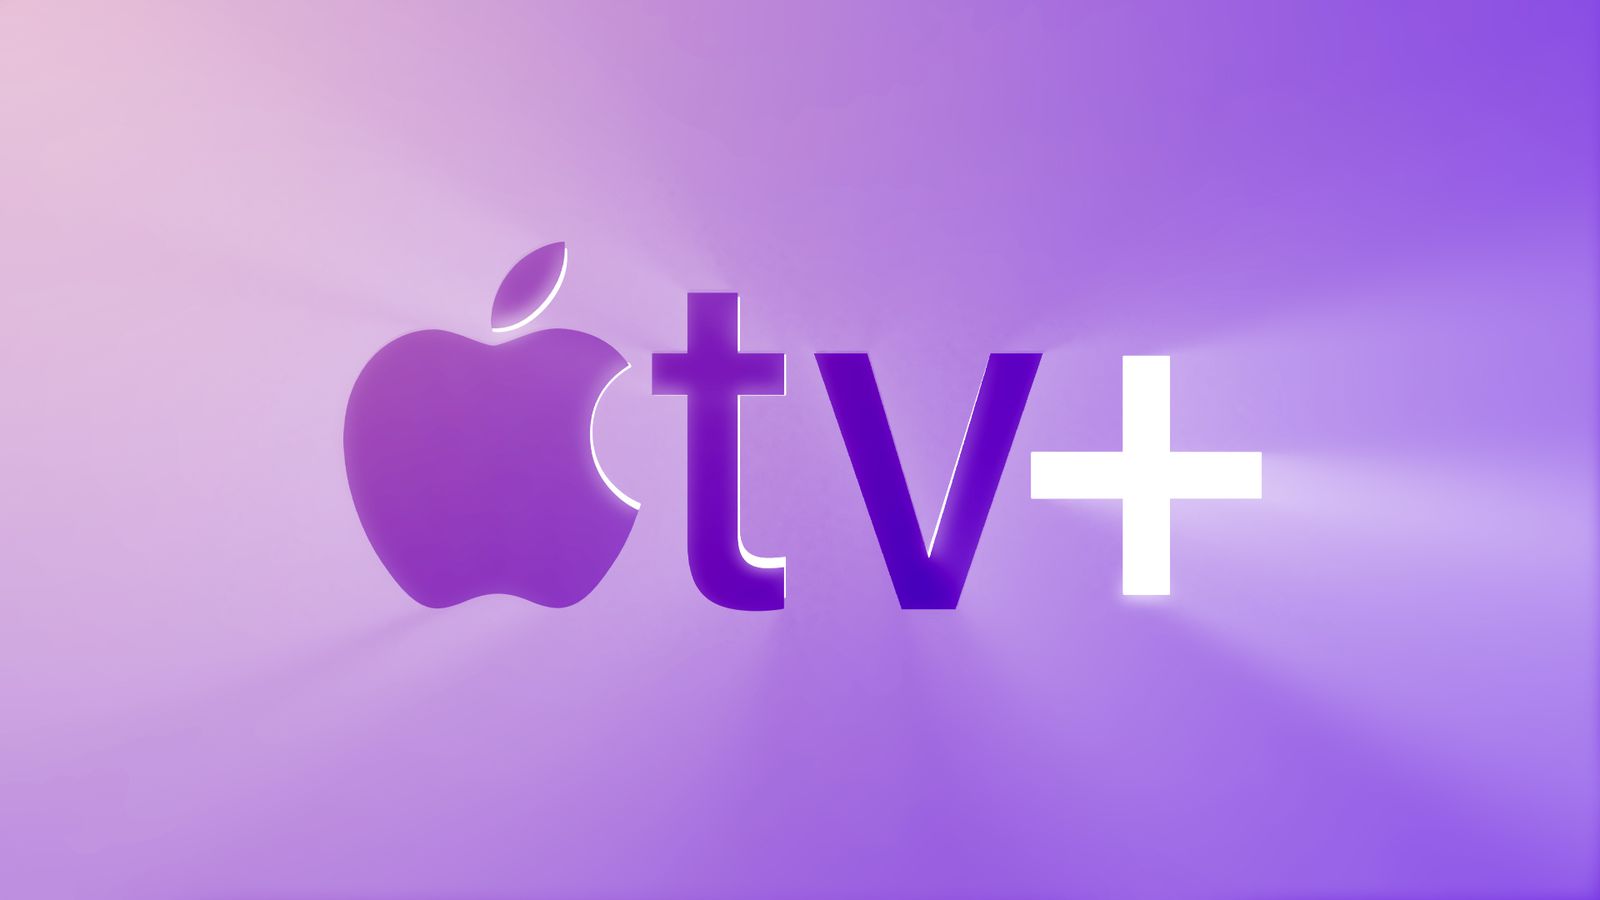 NO FILM, NO VIDEO, NO TV, NO DOCUMENTARY - Apple CEO Tim Cook